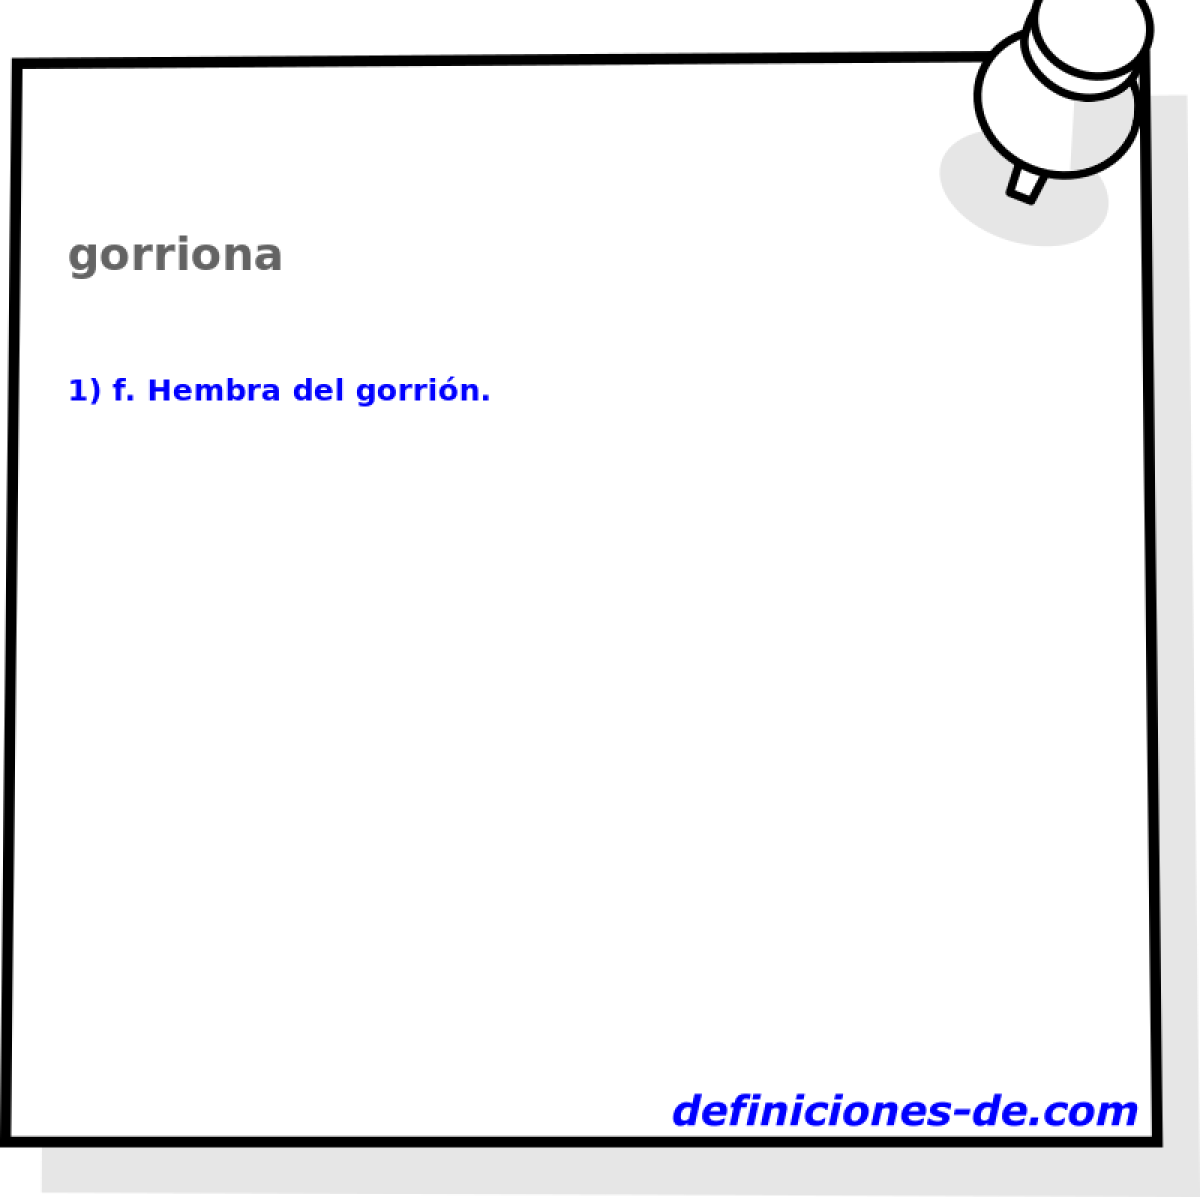 gorriona 